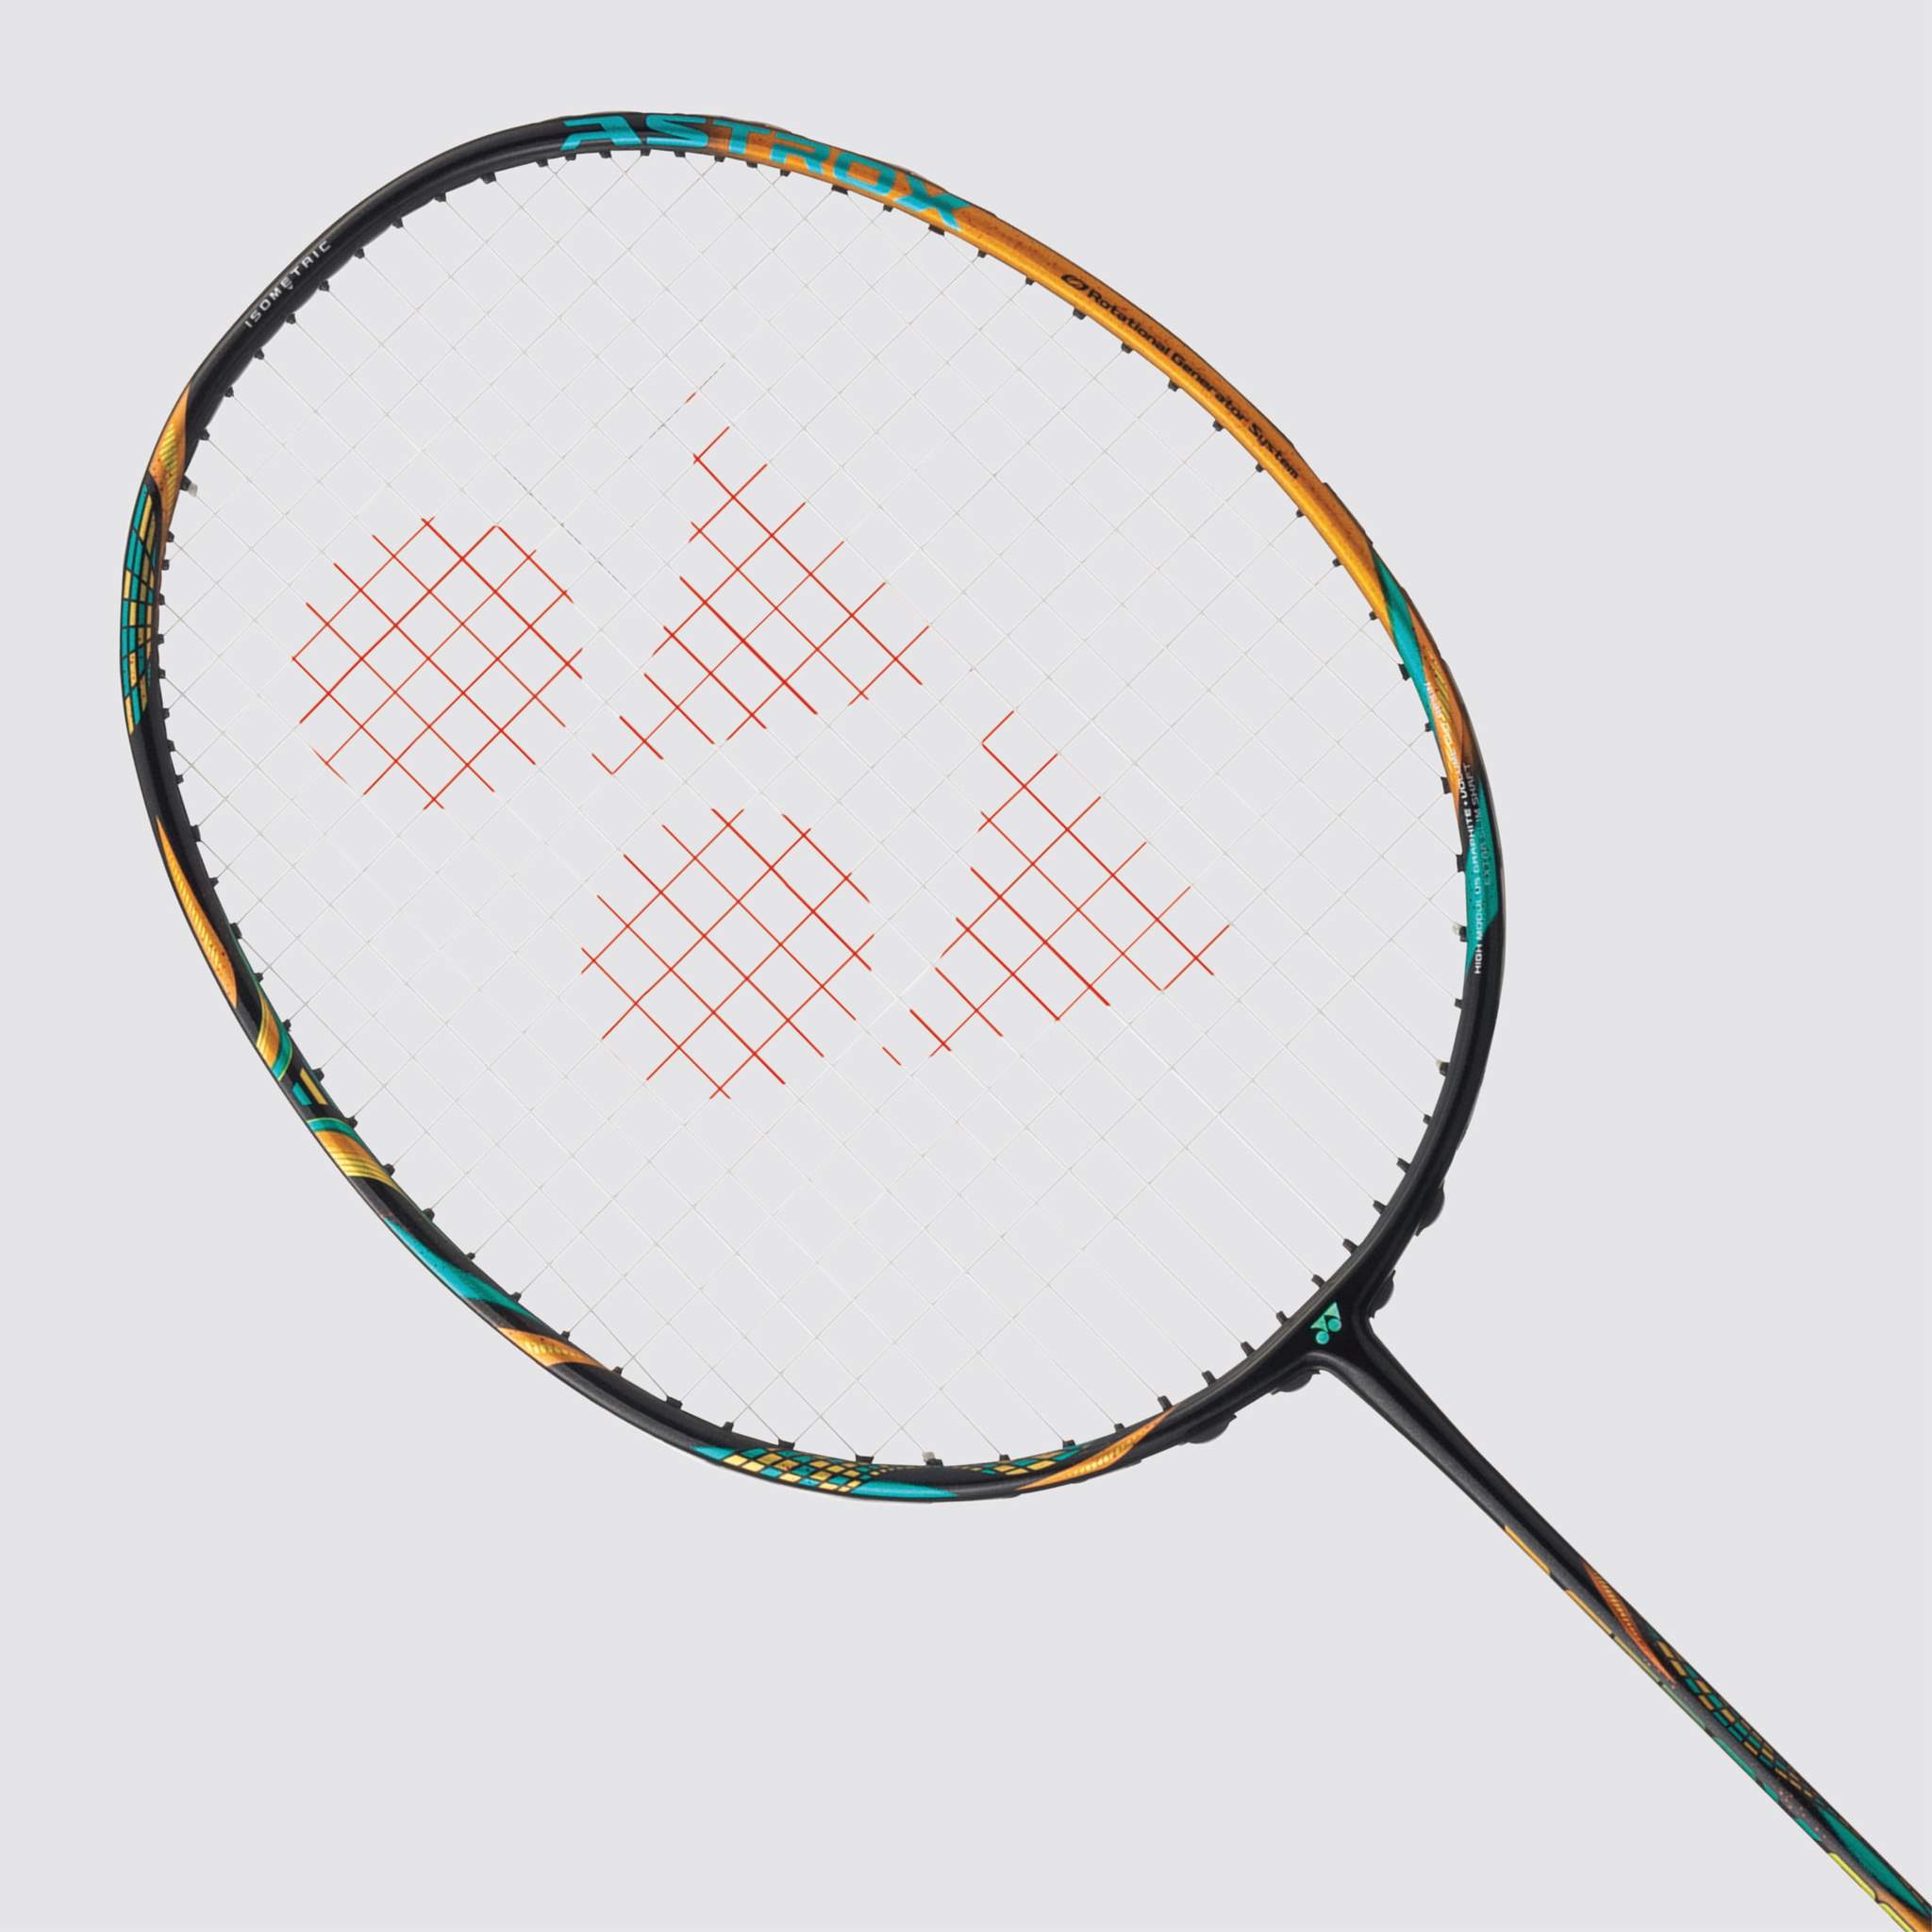 nydhi badminton strings